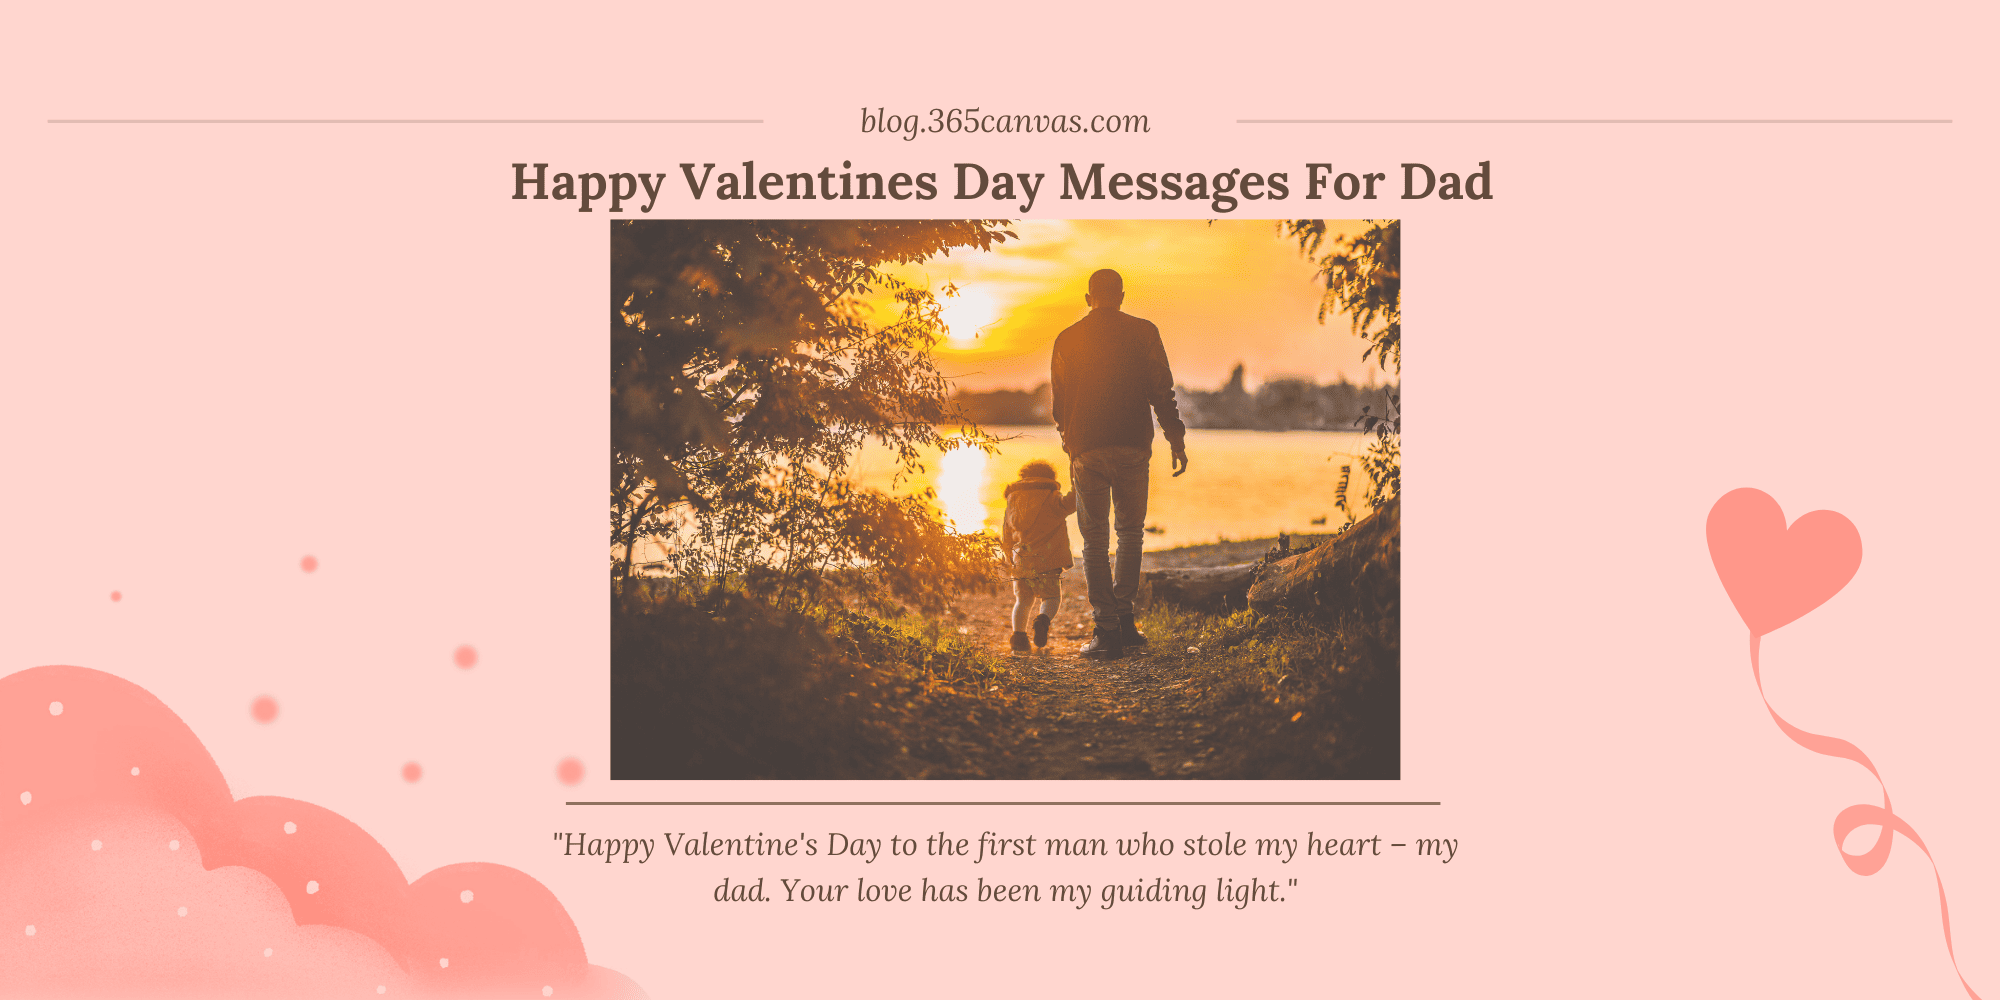 70+ Warm & Heartfelt Valentine’s Day Messages for Dad